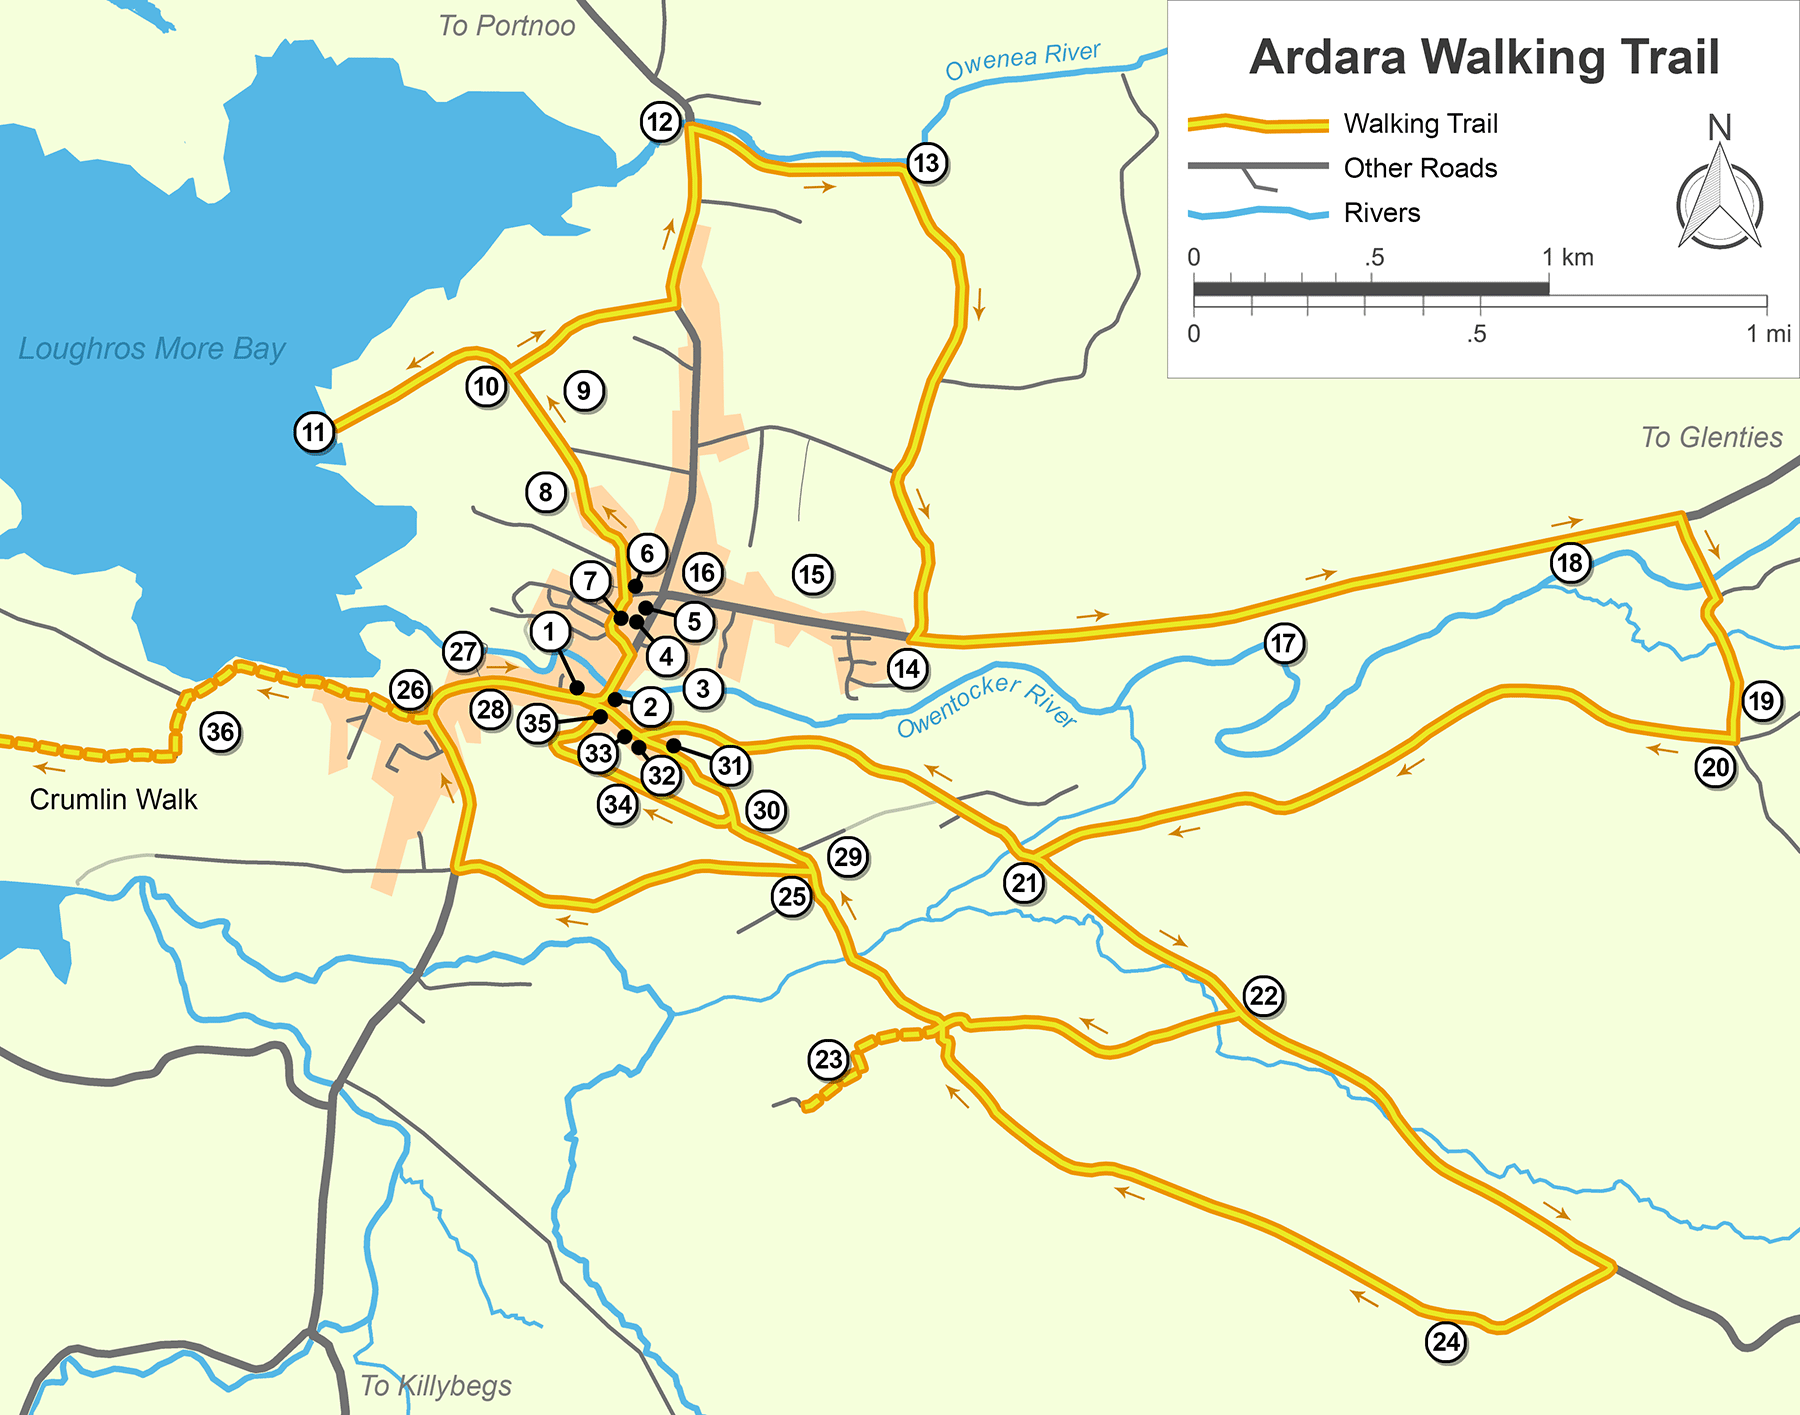 Ardara Walking Trail